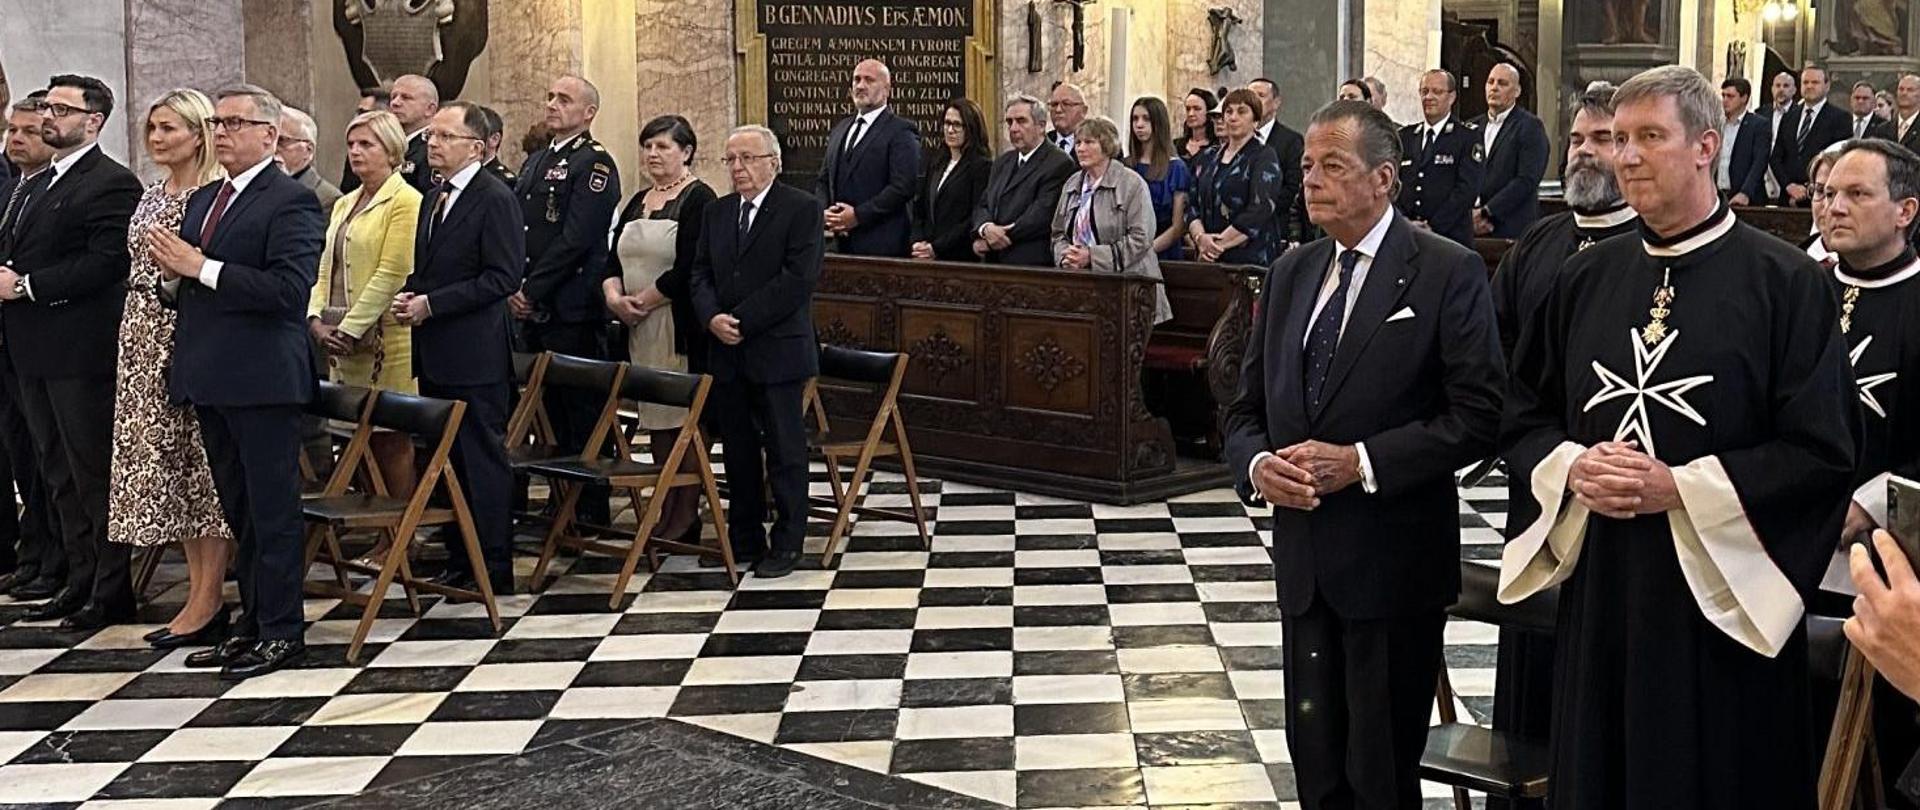 Z okazji uroczystości św. Jana Chrzciciela - Patrona Zakonu Maltańskiego - Ambasador RP Krzysztof Olendzki i Joanna Olendzka wzięli udział w uroczystej mszy św. w katedrze św. Mikołaja w Lublanie